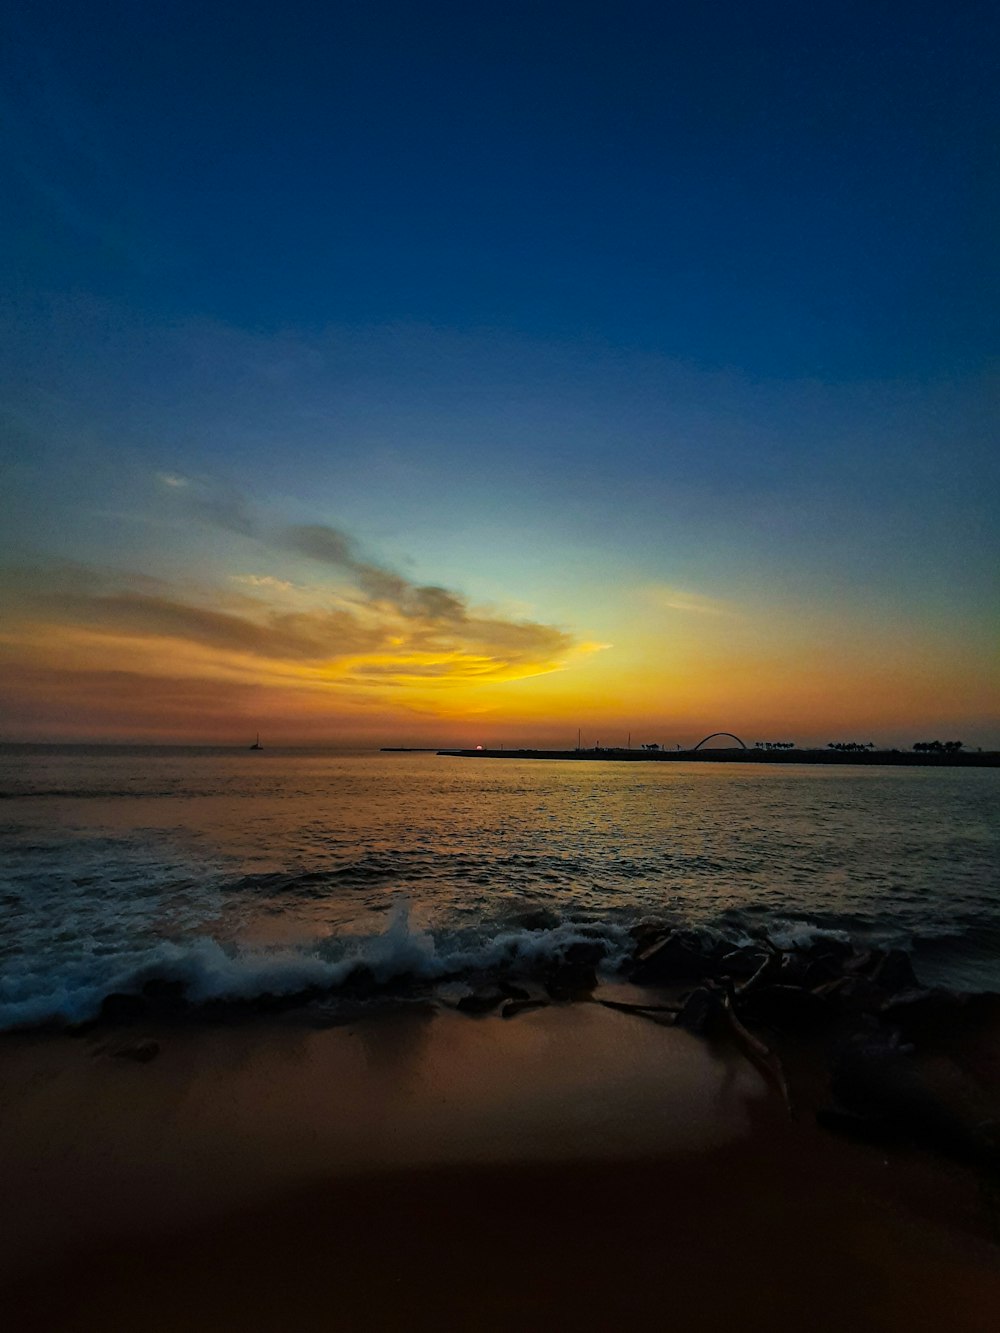 Le soleil se couche sur l’eau de la plage